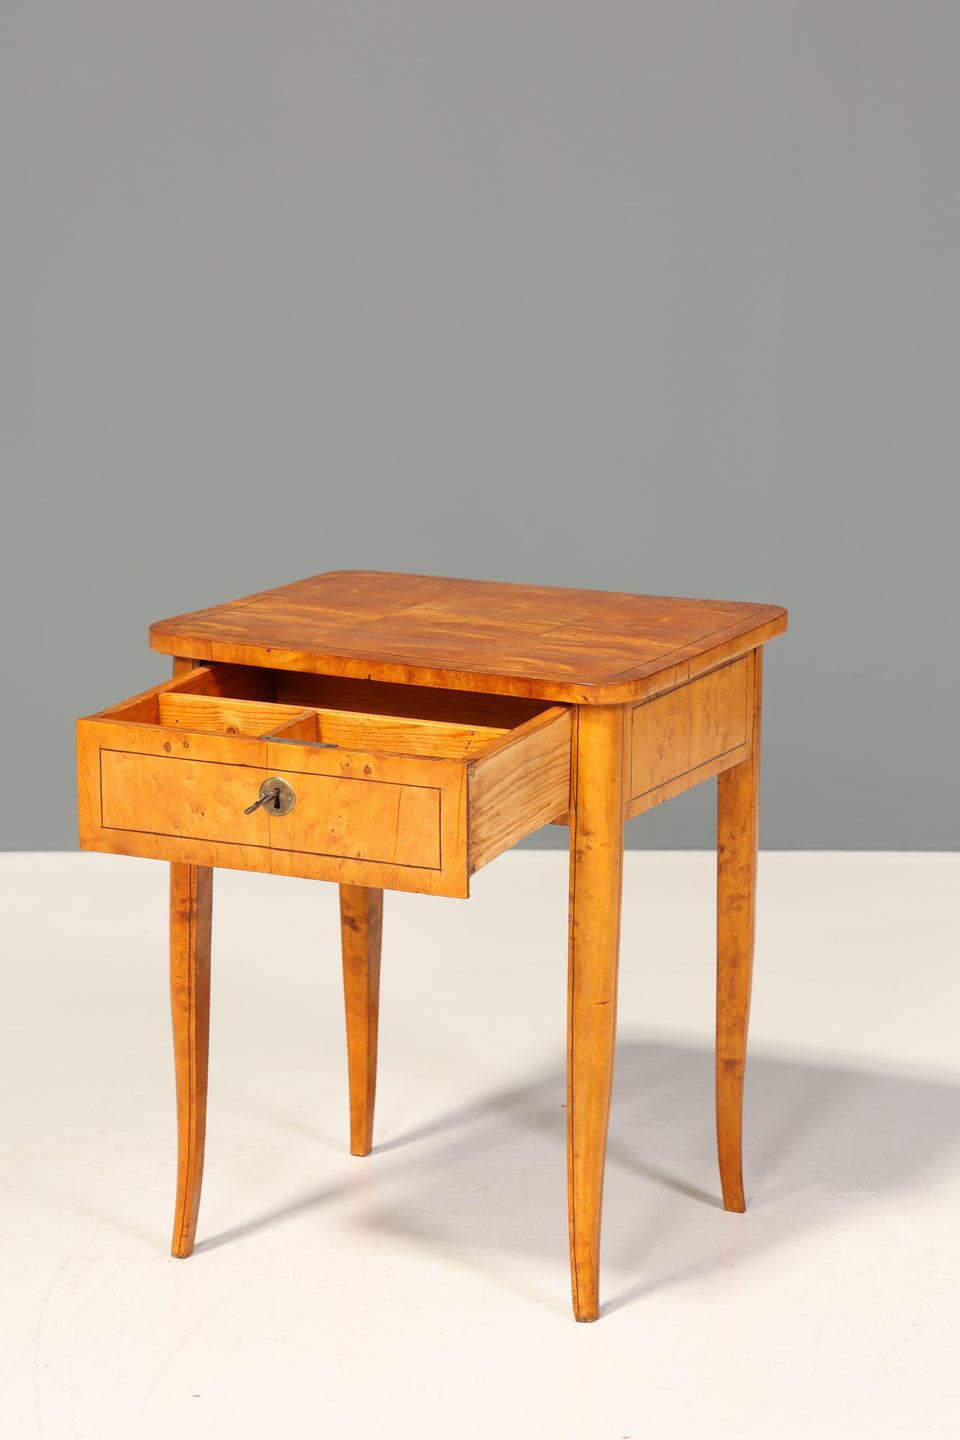 Traumhafter Original Biedermeier Beistelltisch um 1830 Antik Tisch echt Holz Ablagetisch